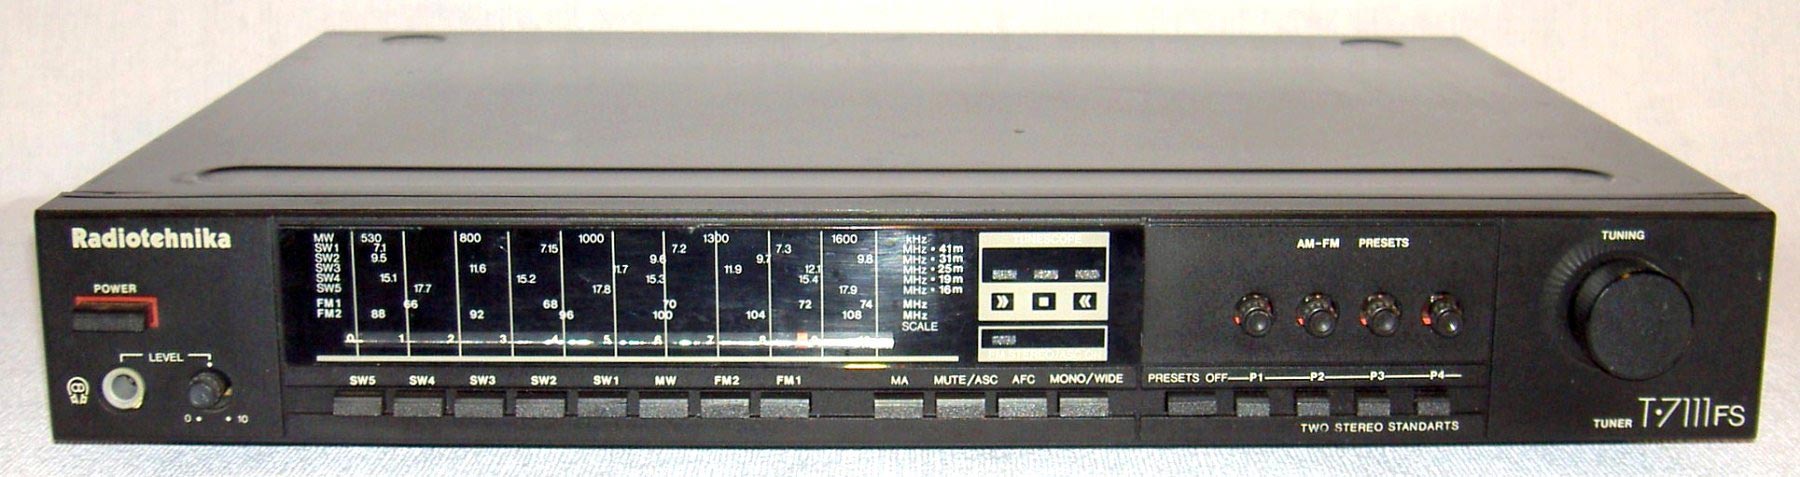 Радиотехника Т-7111FS